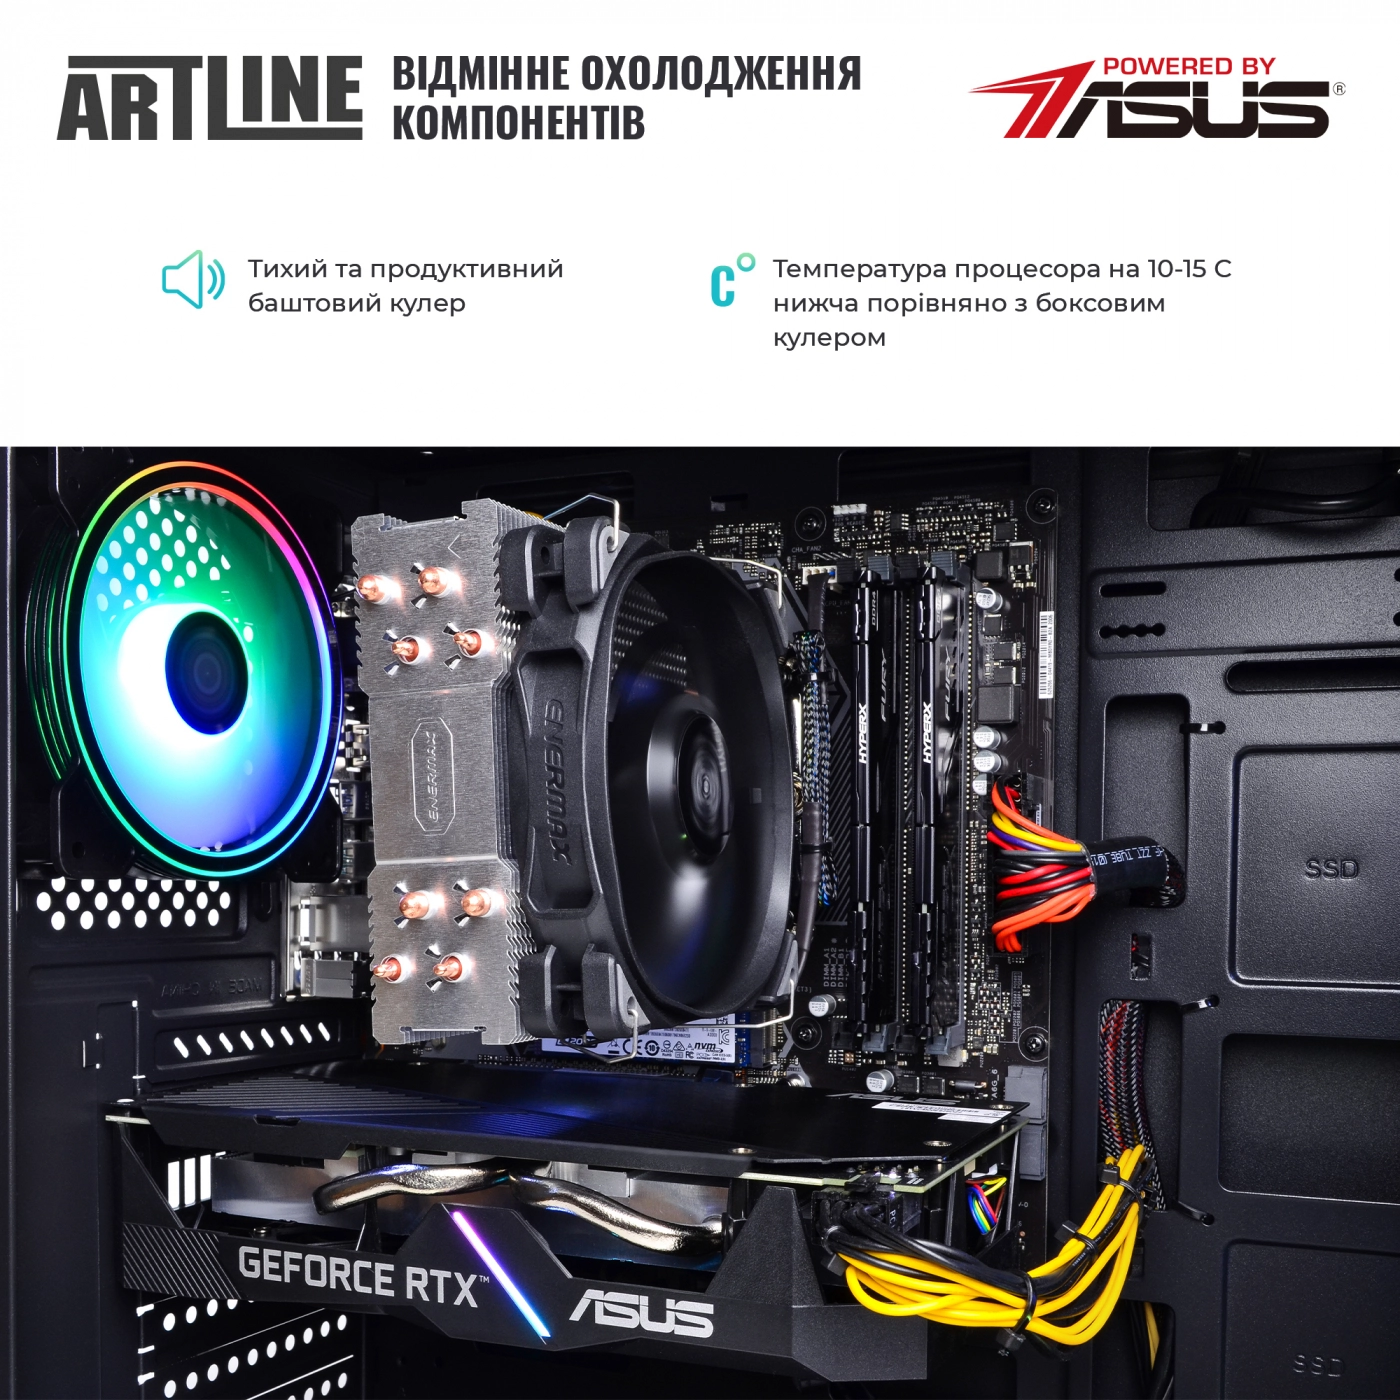 Купить Компьютер ARTLINE Gaming X66v17 - фото 7